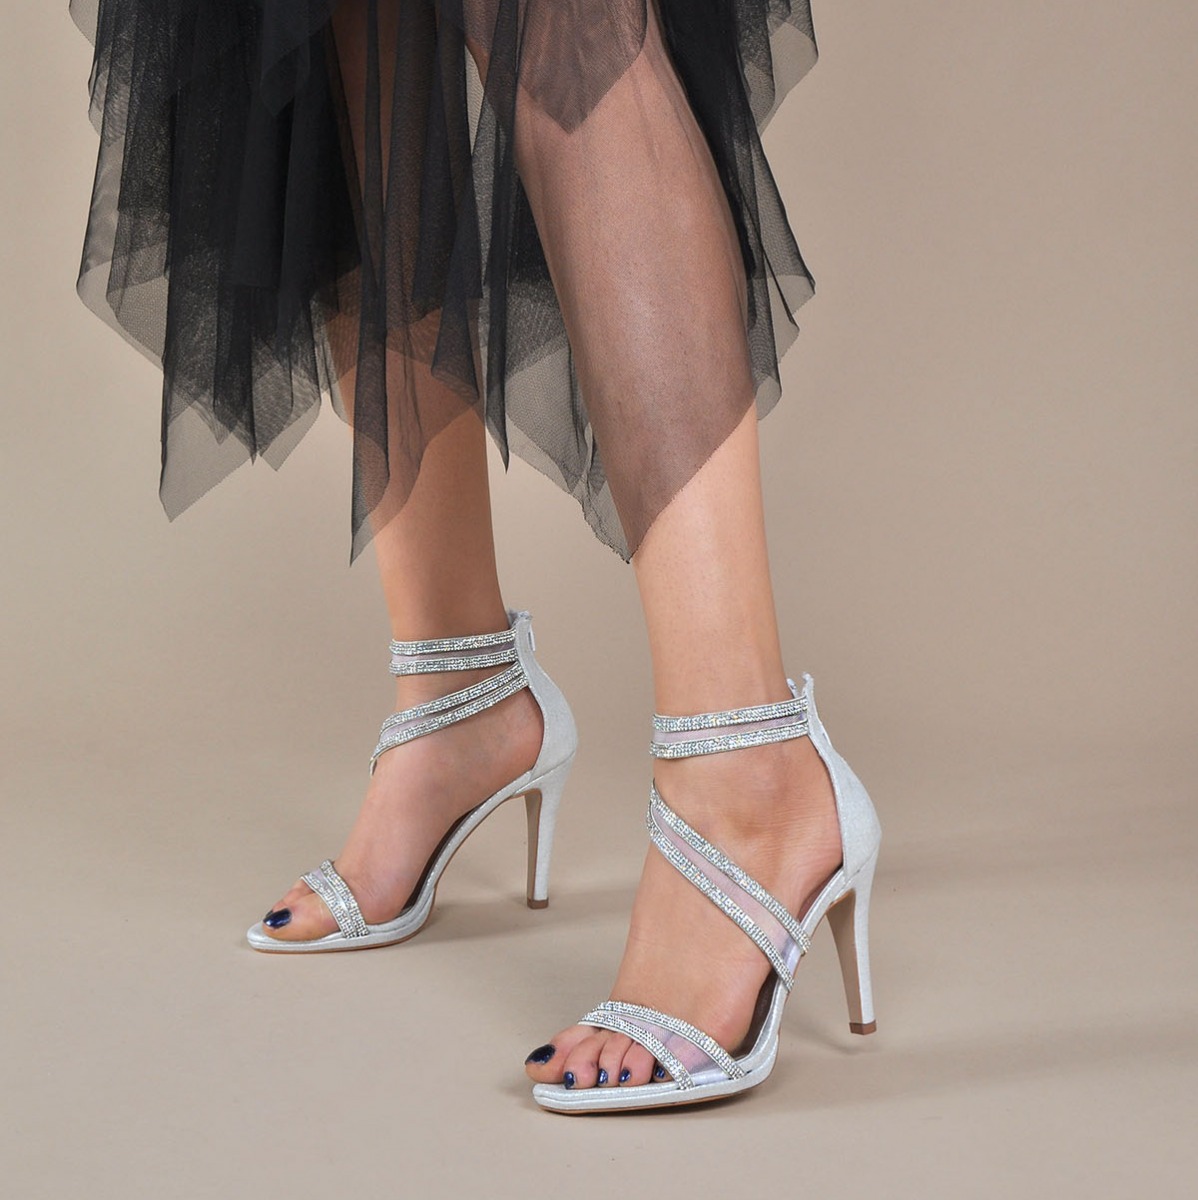 Flo Kadın  Gümüş-Slt Klasik Topuklu Ayakkabı VZN20-036Y. 1